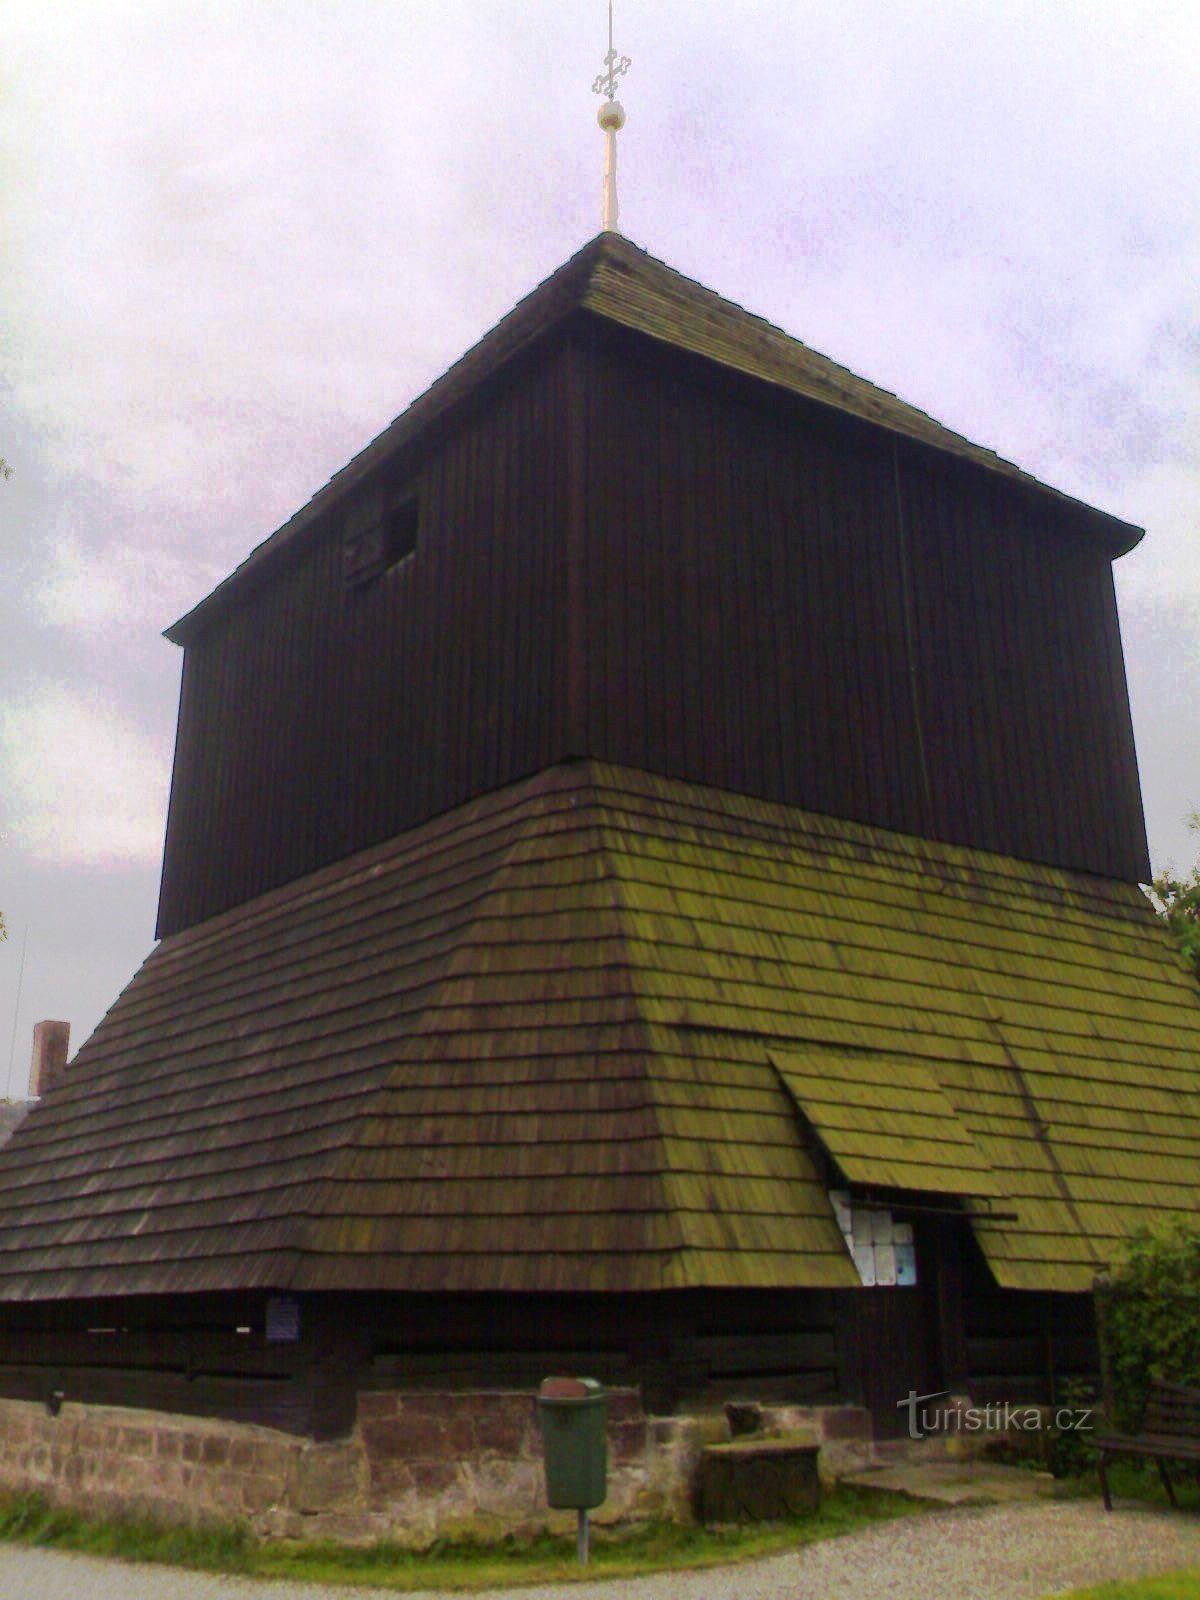 Rovensko pod Troskami - drveni zvonik